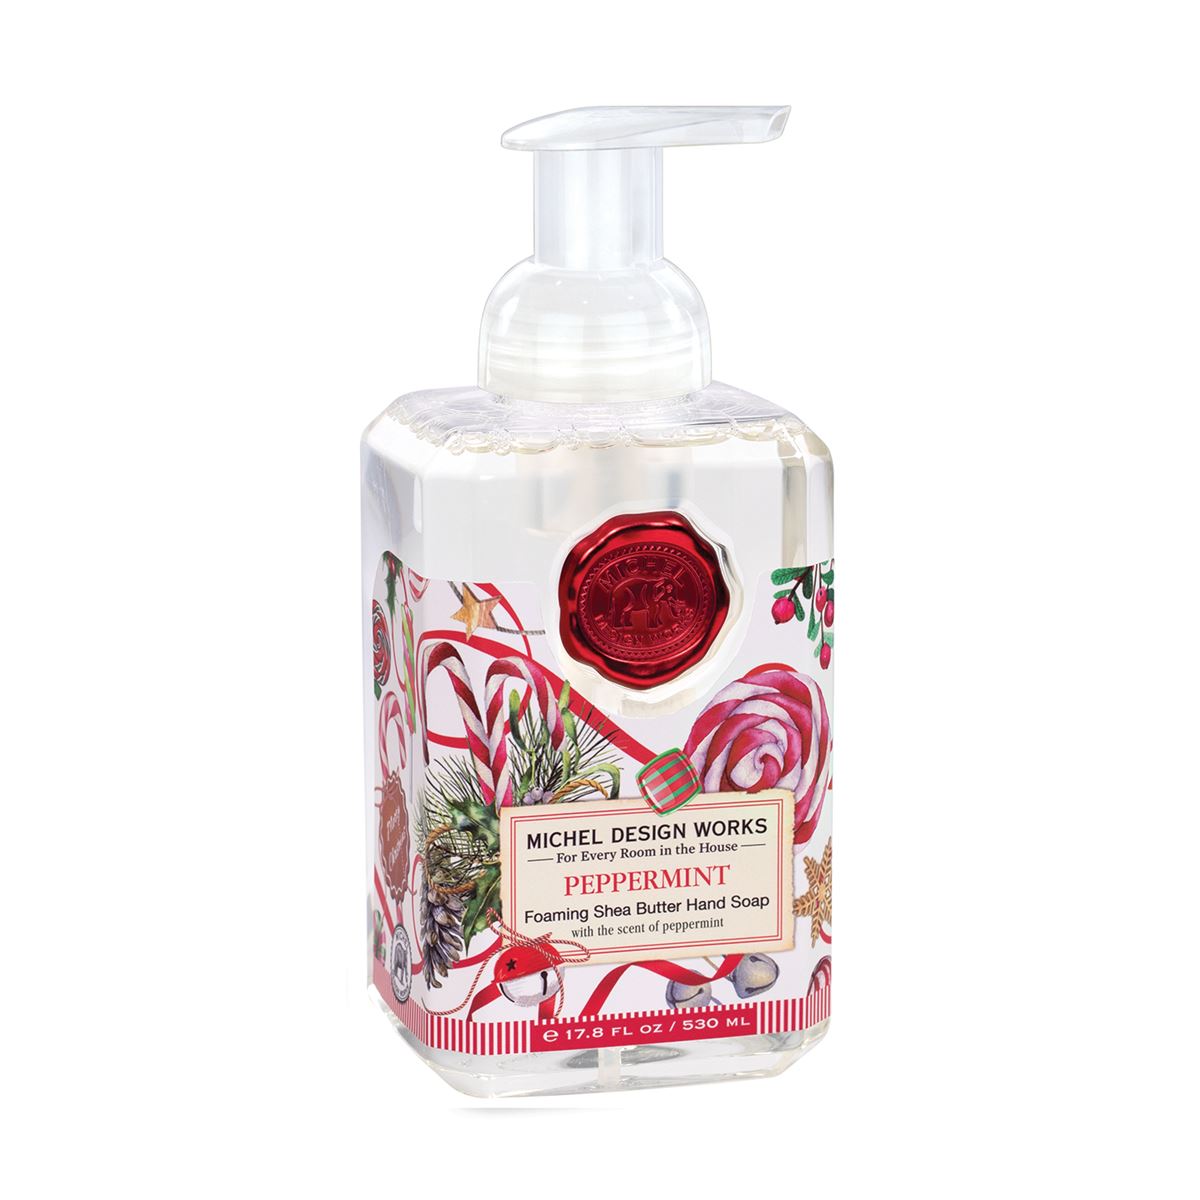 Peppermint Foaming Hand Soap